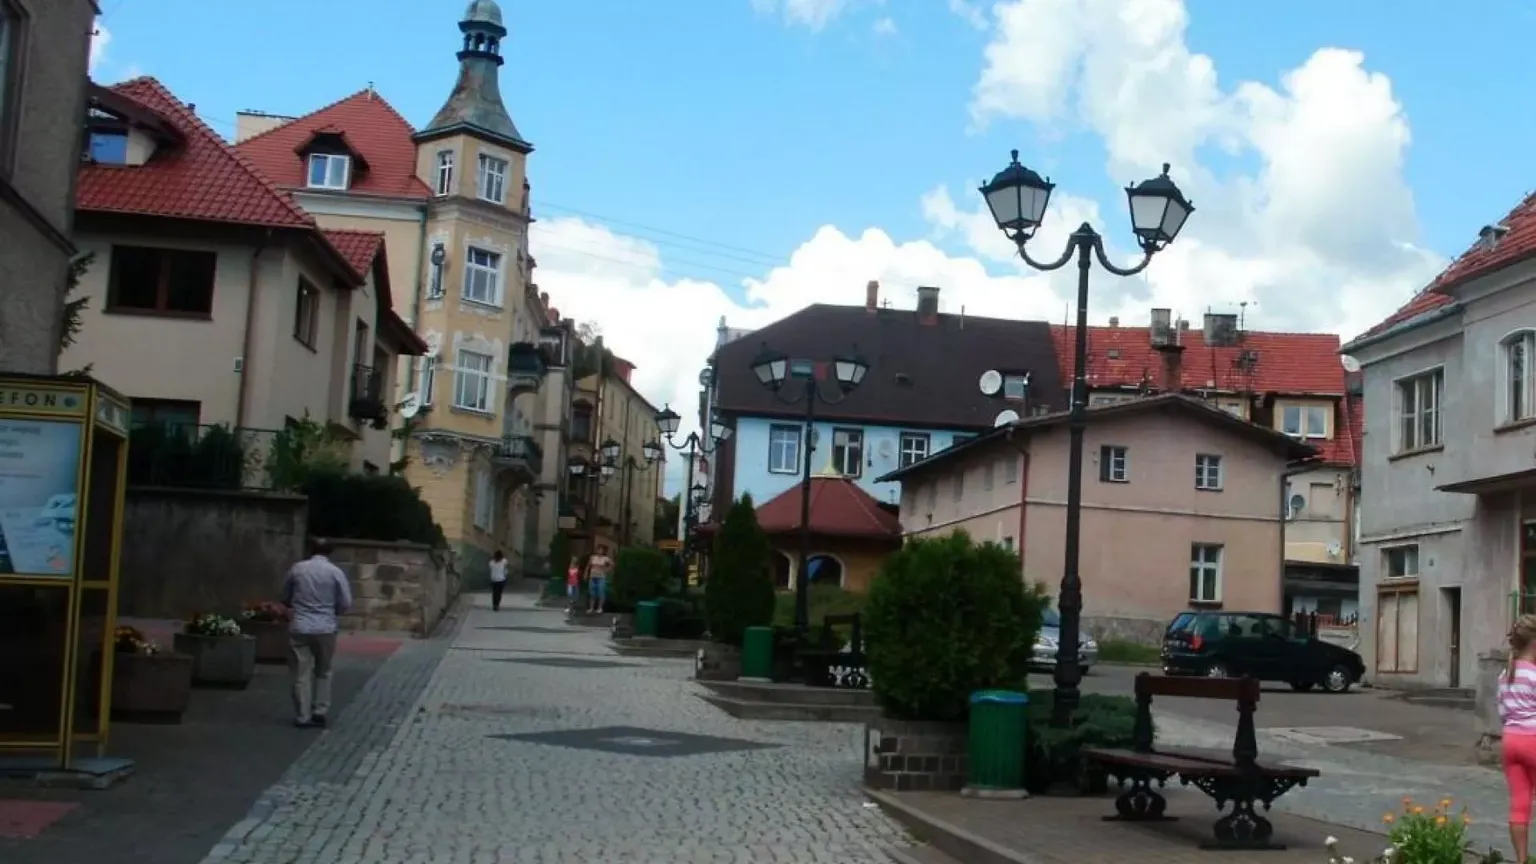 Duszniki-Zdroj | Lower Silesian Region, Poland - Rated 5